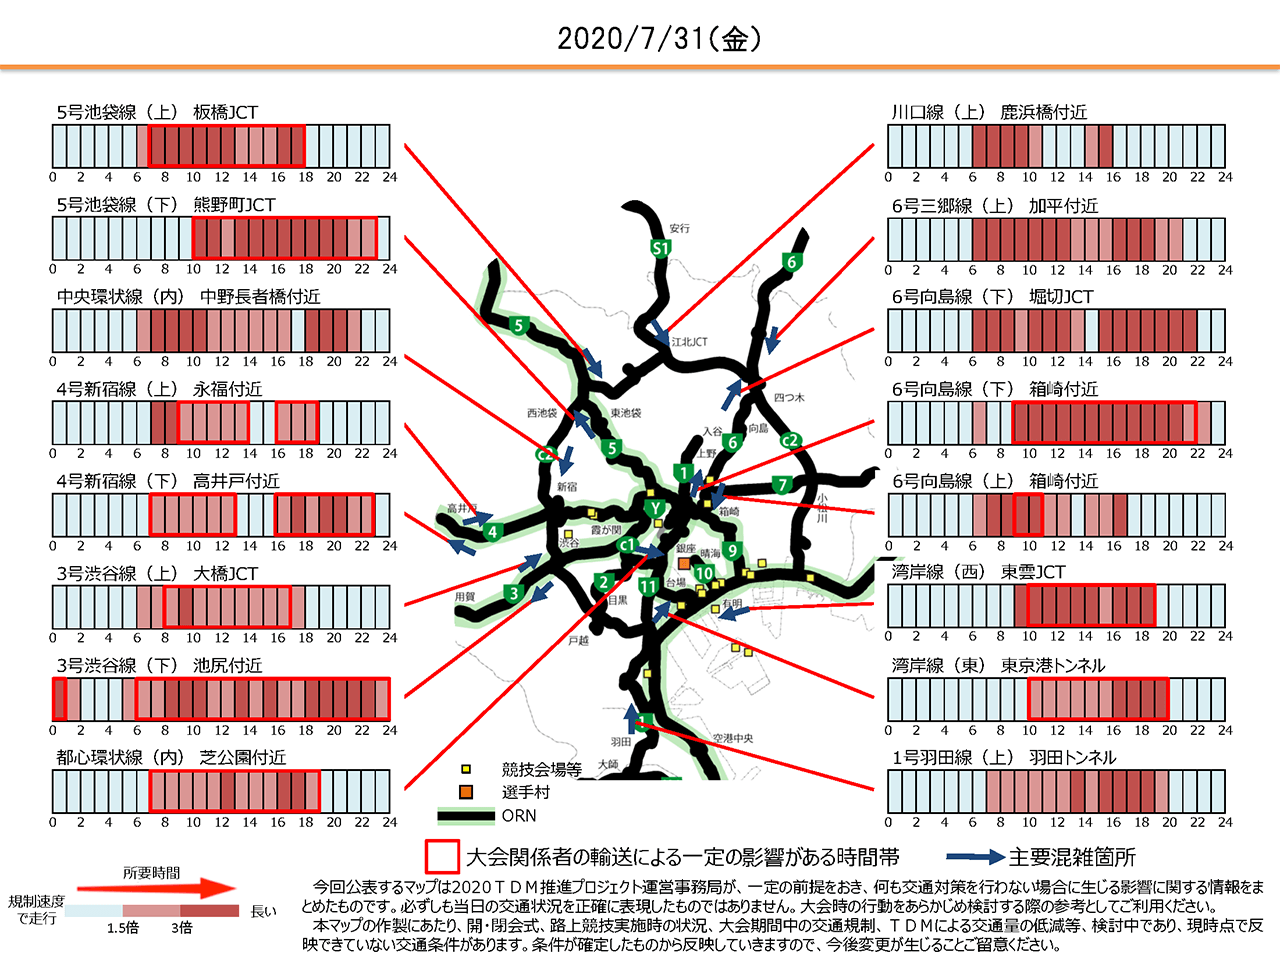 东京都公布的“大会运输影响度地图”（截至2019年6月15日）显示的、在不采取任何交通对策的情况下，2020年7月31日的首都高速交通预测情况。除深夜和凌晨外，其他时段均被代表拥堵的红色染成了一片